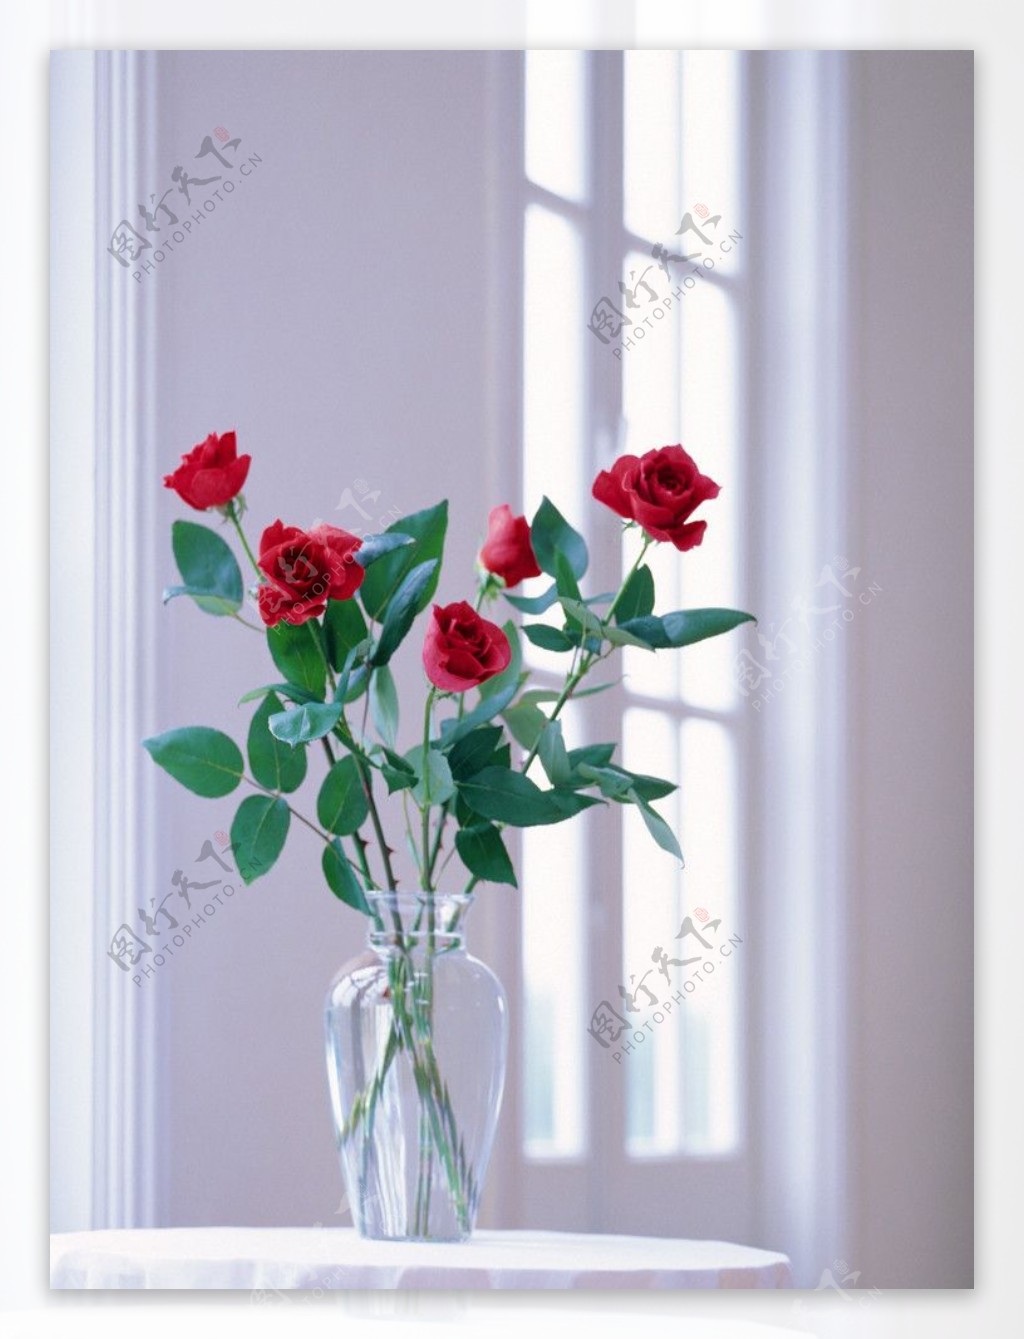 室内窗户前圆桌上的红玫瑰图片